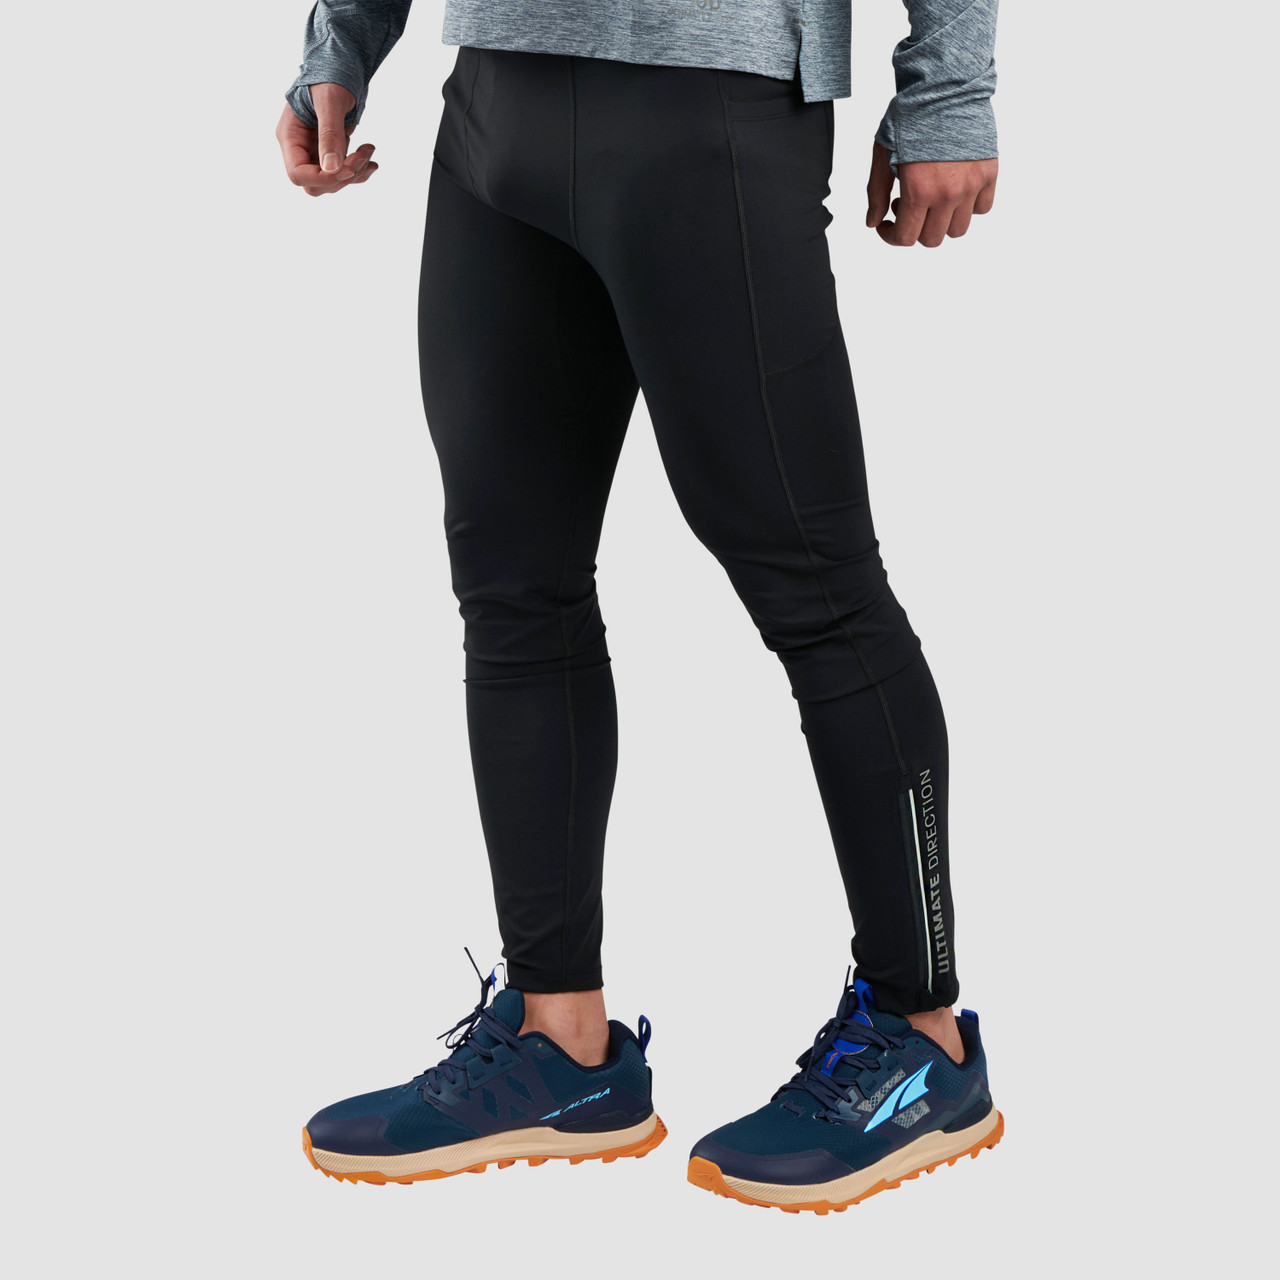 Men's Tights & Leggings. Nike IN